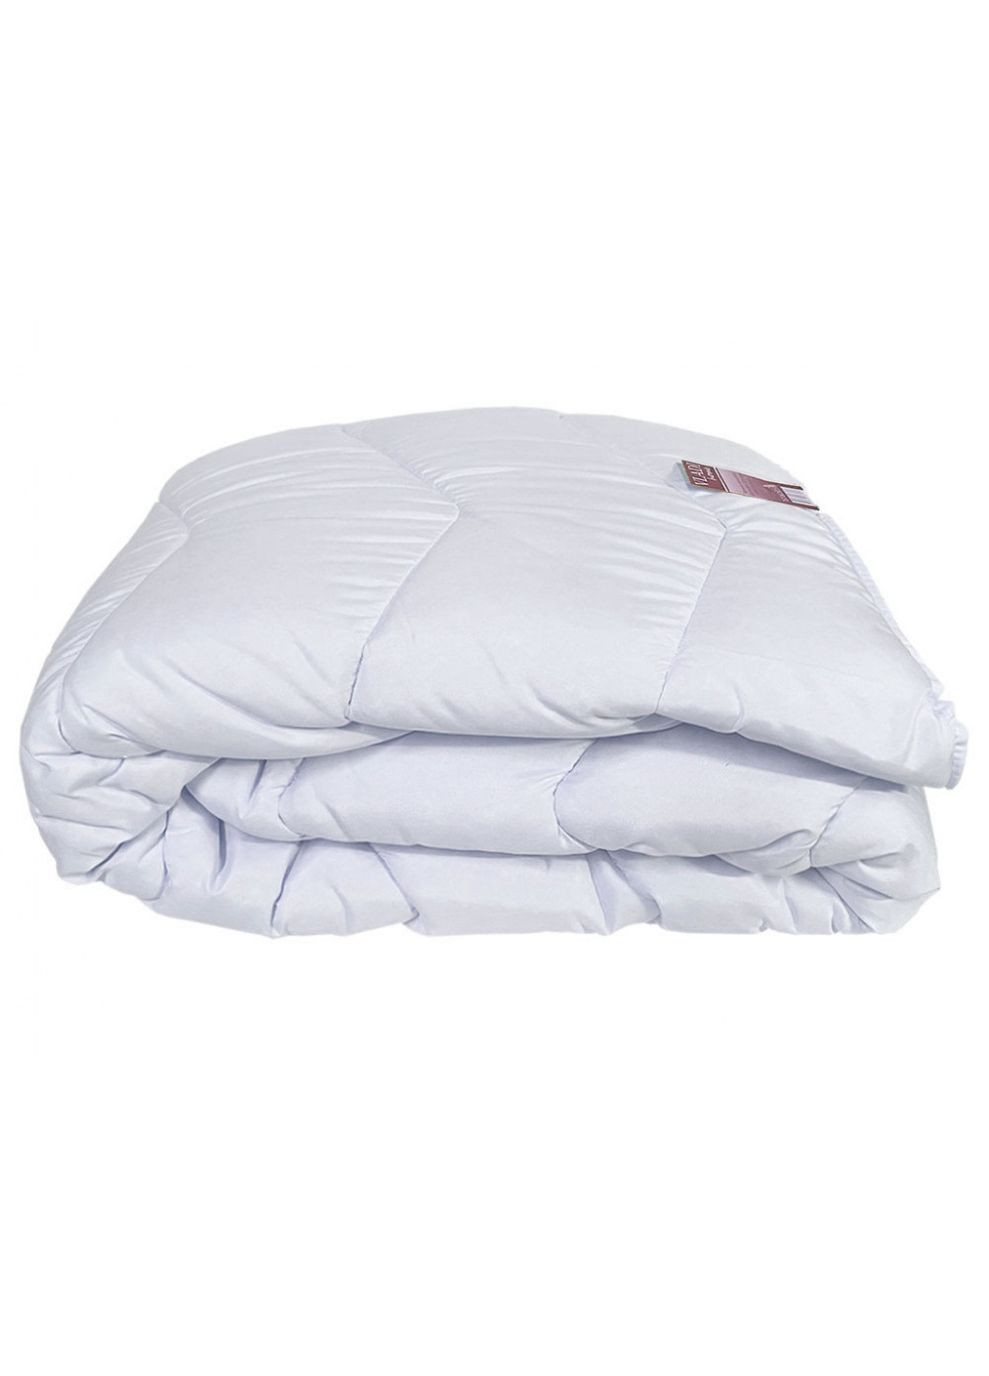 Одеяло шерстяное стеганое - Белое 200*220 евро (400 г/м2) Vladi (288045983)